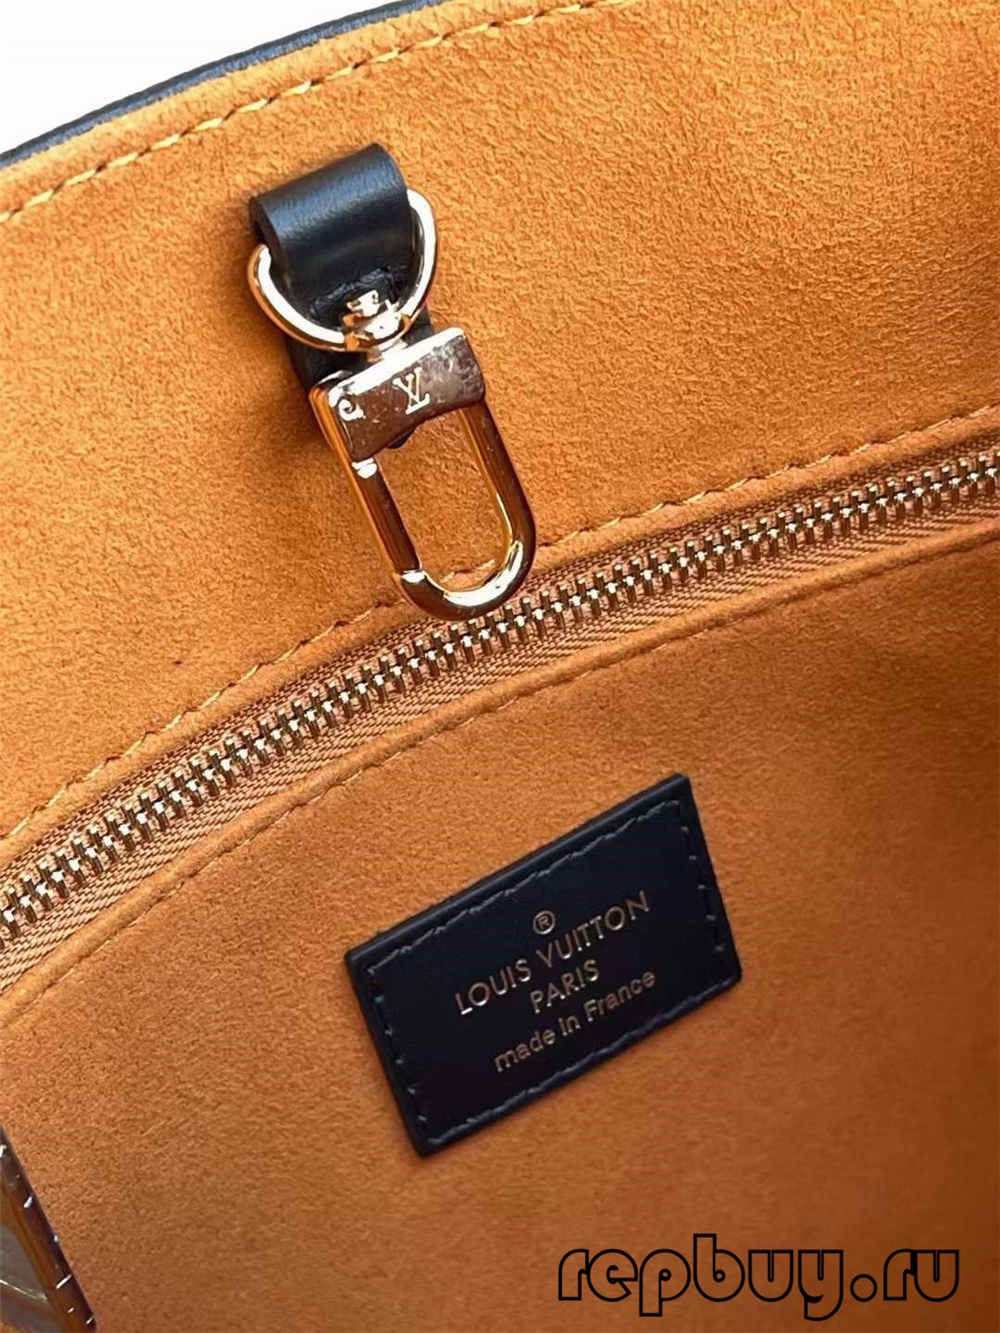 Louis Vuitton ONTHEGO M45653 Best quality replica bag (2022 updated)-Legjobb minőségű hamis Louis Vuitton táska online áruház, replika designer táska ru